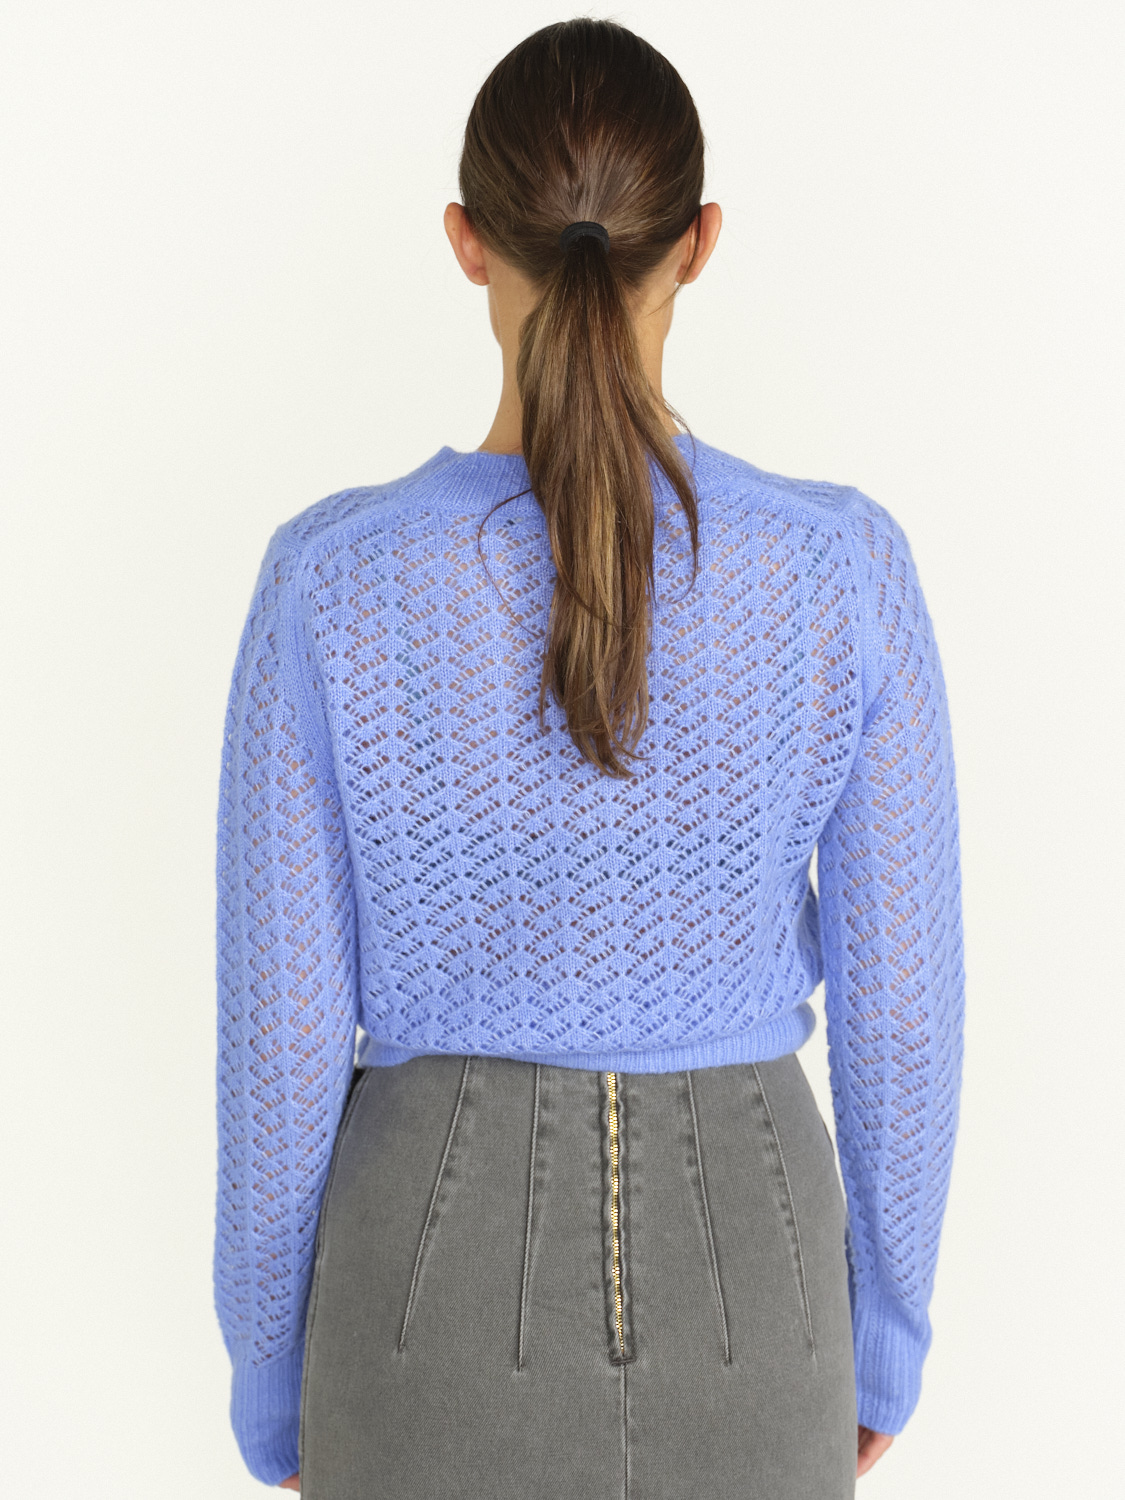 Iris von Arnim Cropped Cashmere Silk Cardigan - Cashmere Silk Cardigan with Ajour Pattern blue M